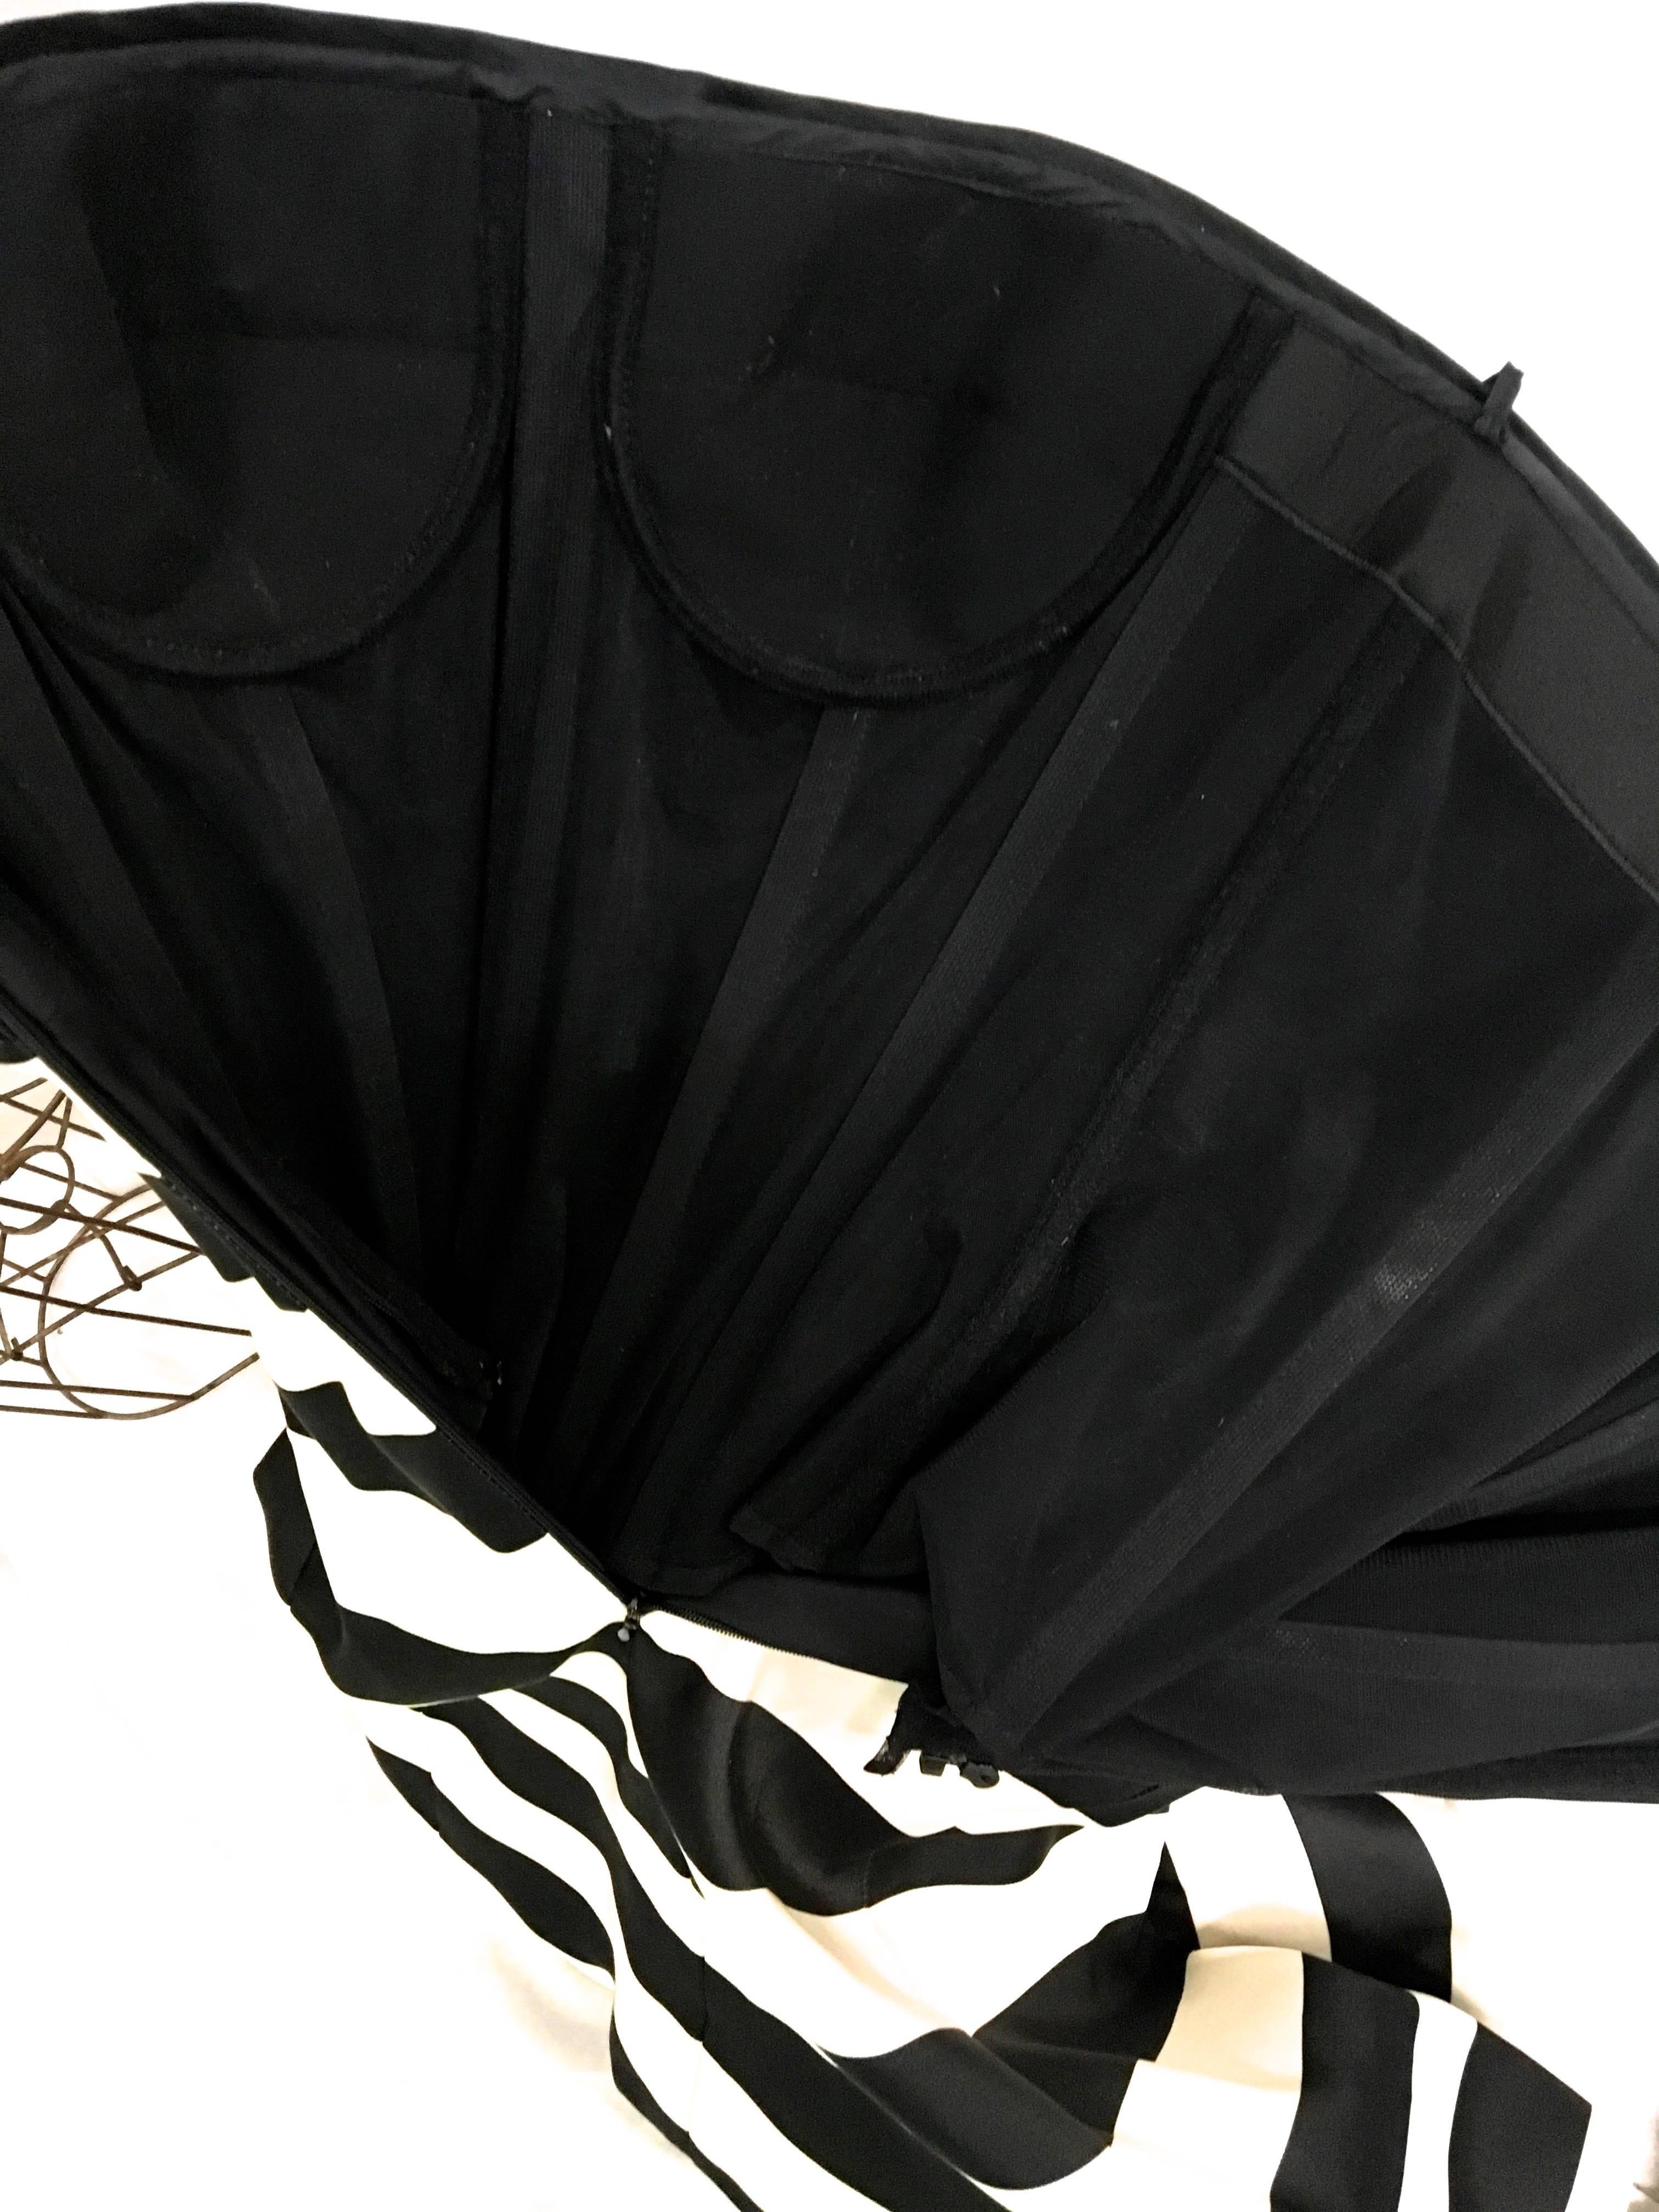 Giorgio Armani Black Label Cocktail Dress For Sale 4